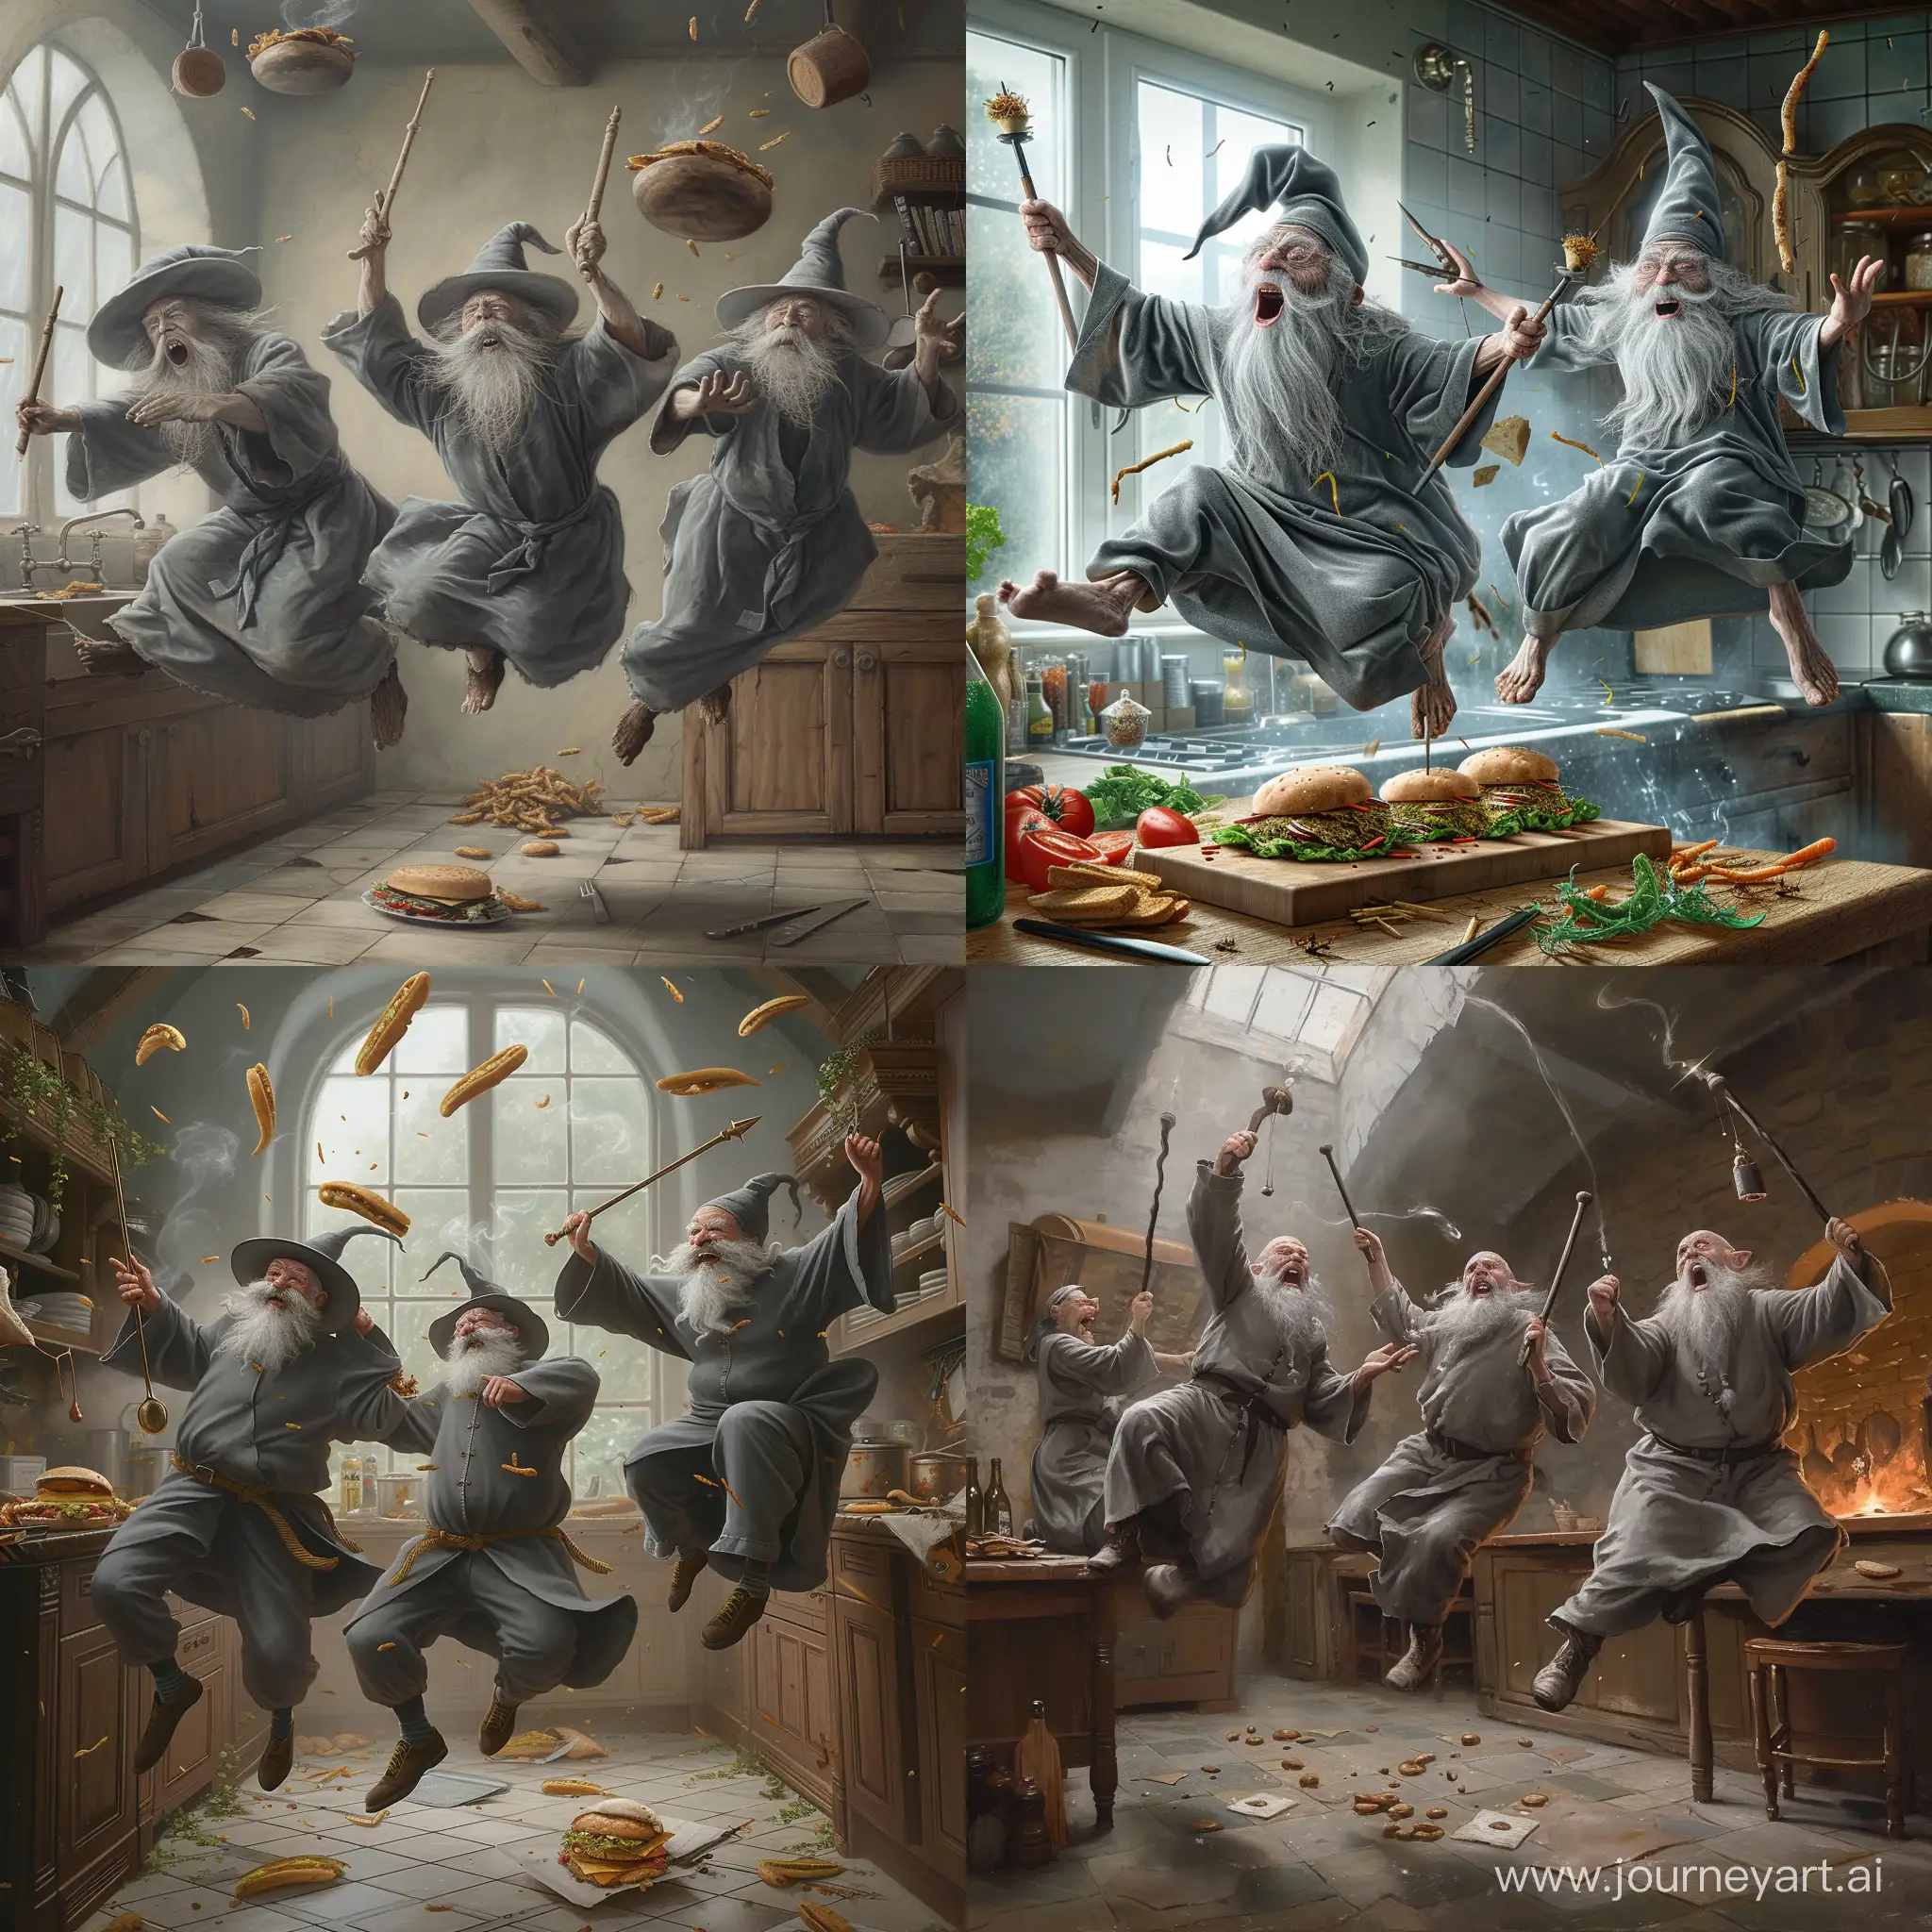 реалистичное изображение старых серых седых колдунов  и их магии в фаст фуде на кухне с посохами и заклинаниями. Колдуны прыгают и веселятся на кухне